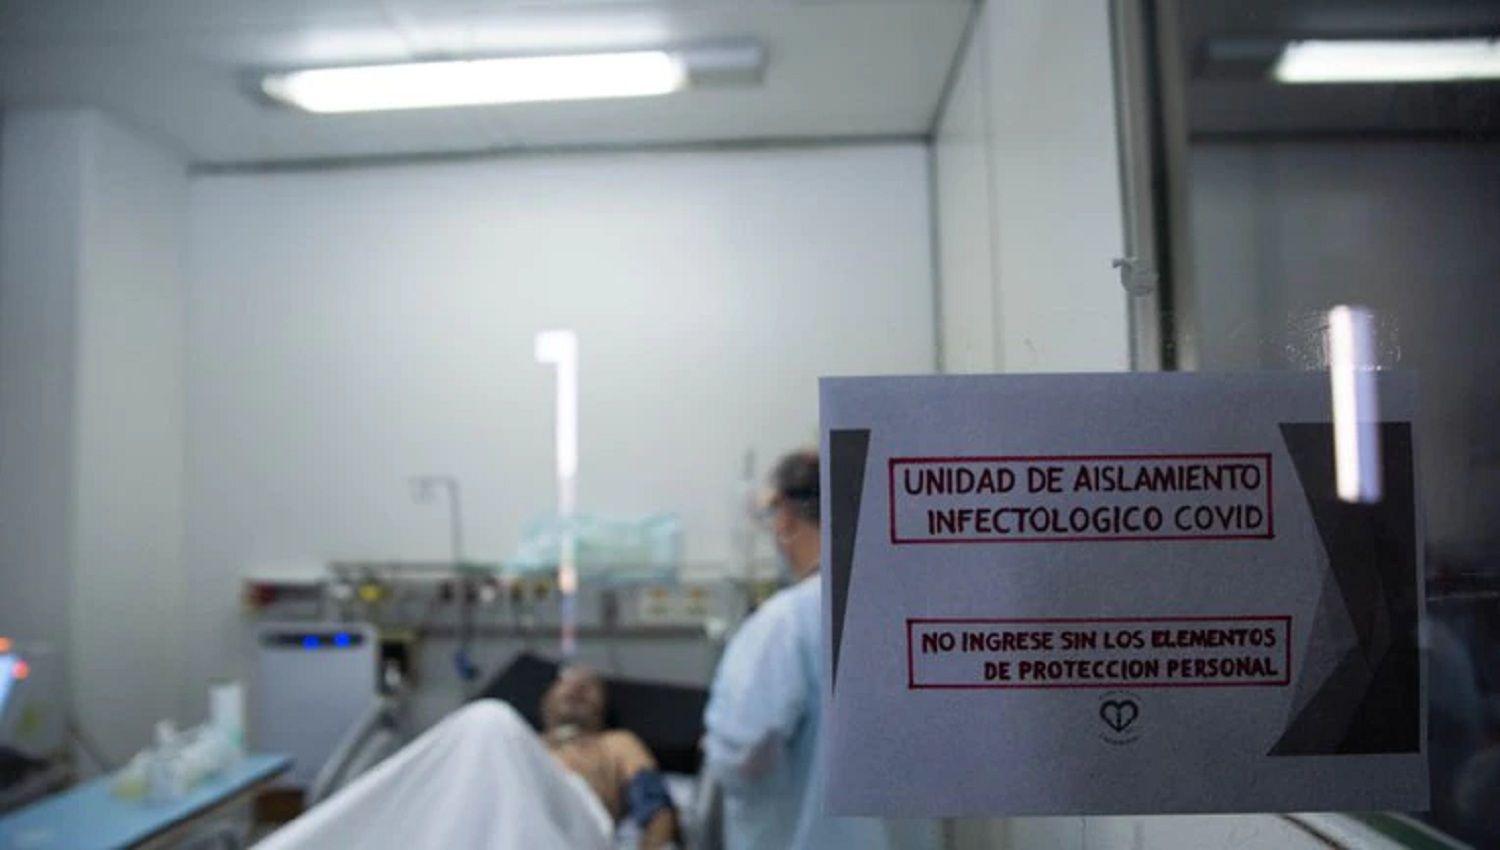 Argentina tuvo este saacutebado 215 muertes y 14034 contagios